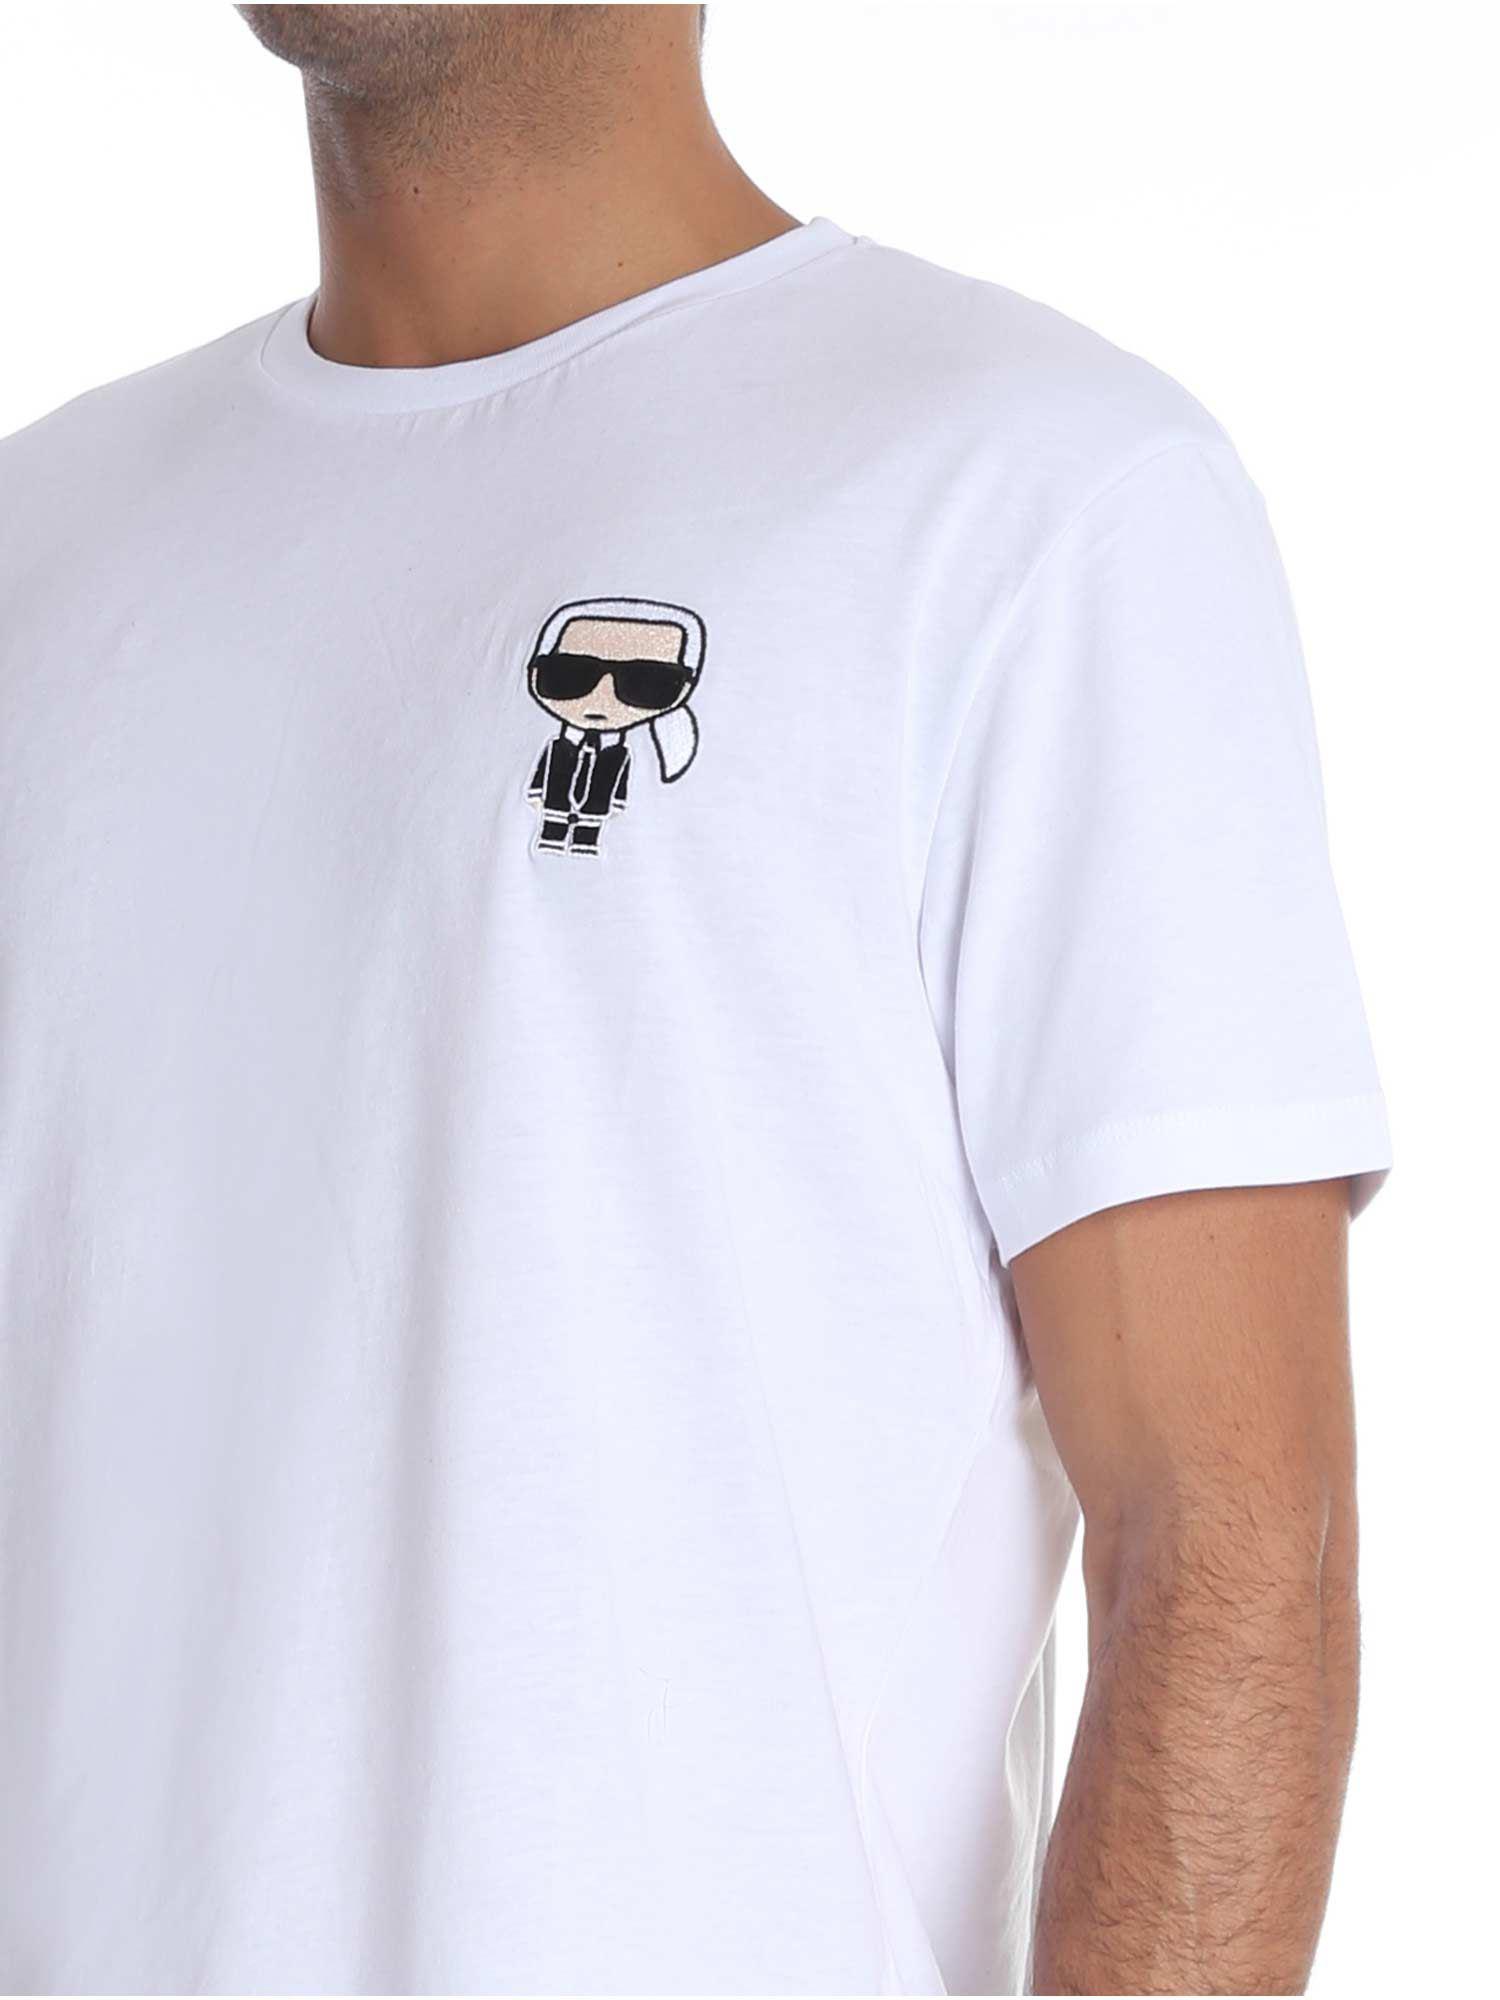 Karl Lagerfeld 'ikonik Karl' White Short-sleeved T-shirt